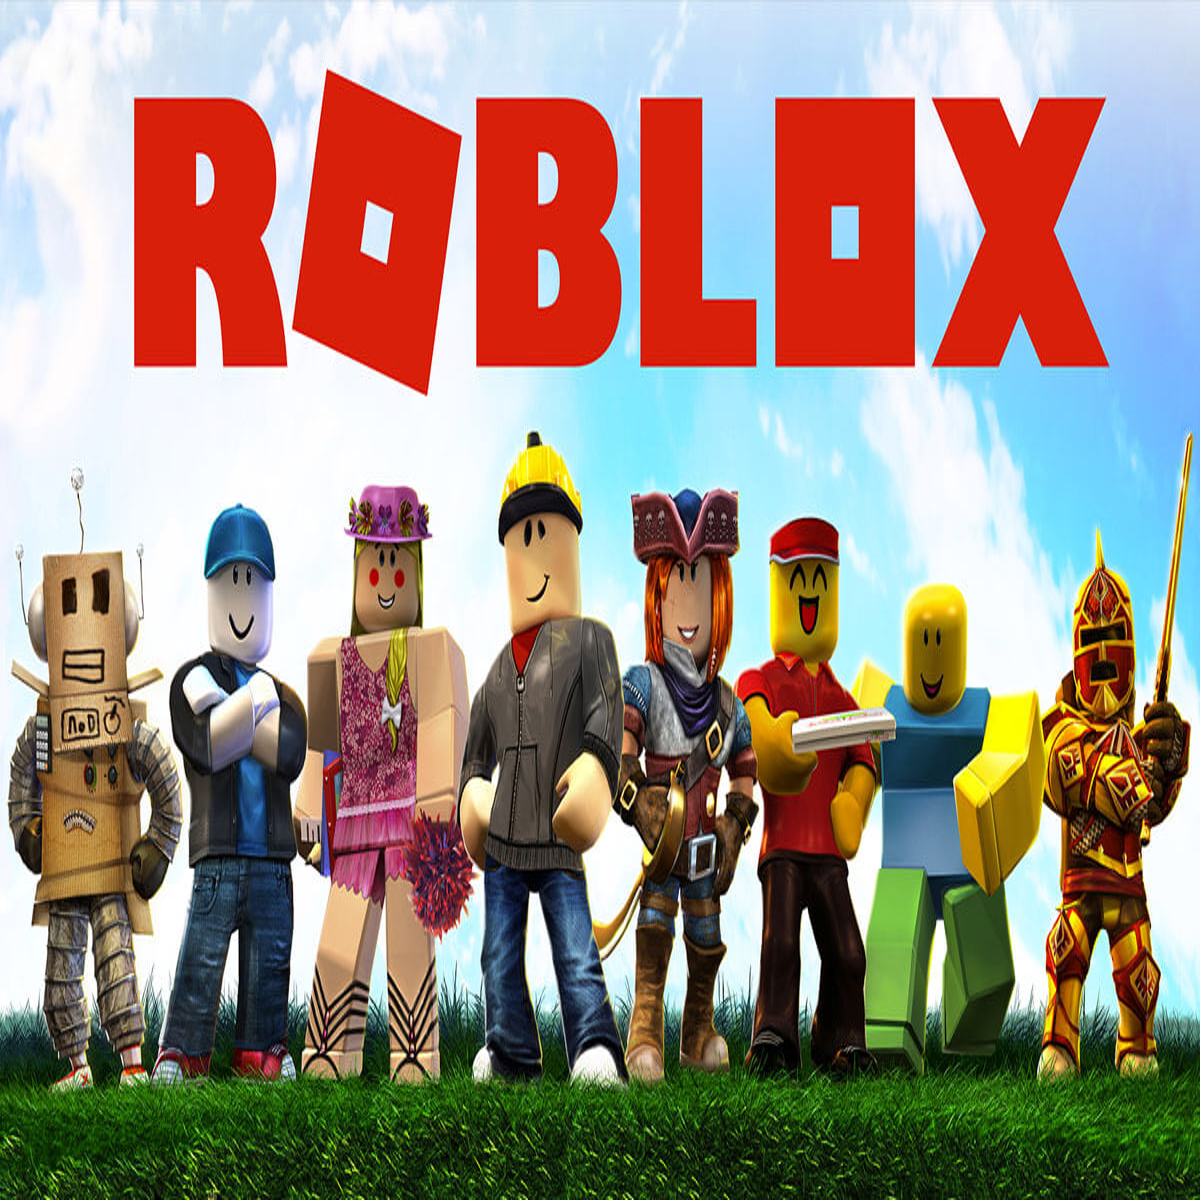 Reino Unido: criança de 10 anos gasta cerca de 3.000 euros no jogo Roblox